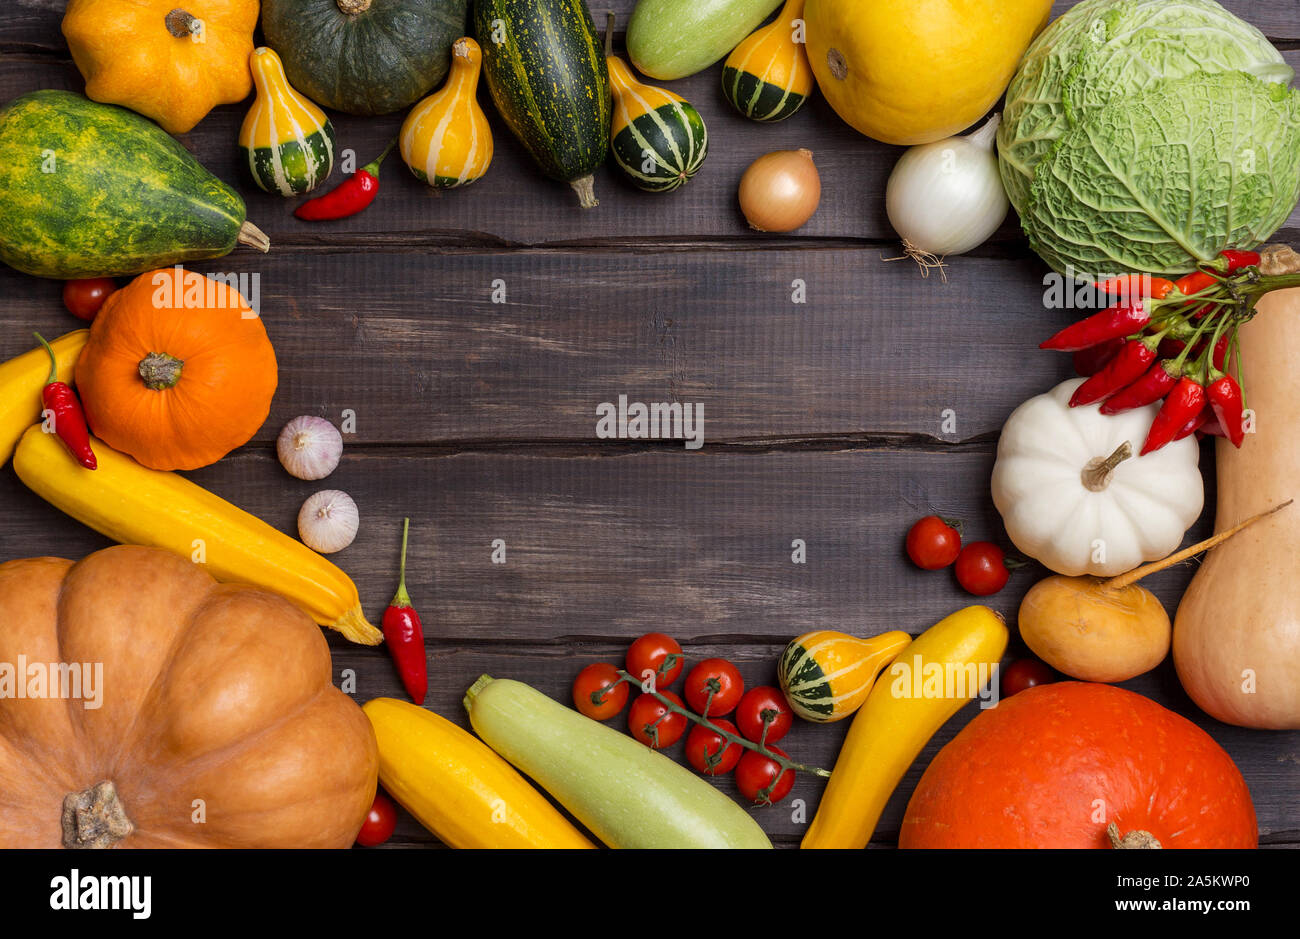 Copie espace arrière-plan avec des légumes sur les planches de bois sombre. Concept d'arrière-plan de récolte. Mise à plat, vue du dessus Banque D'Images